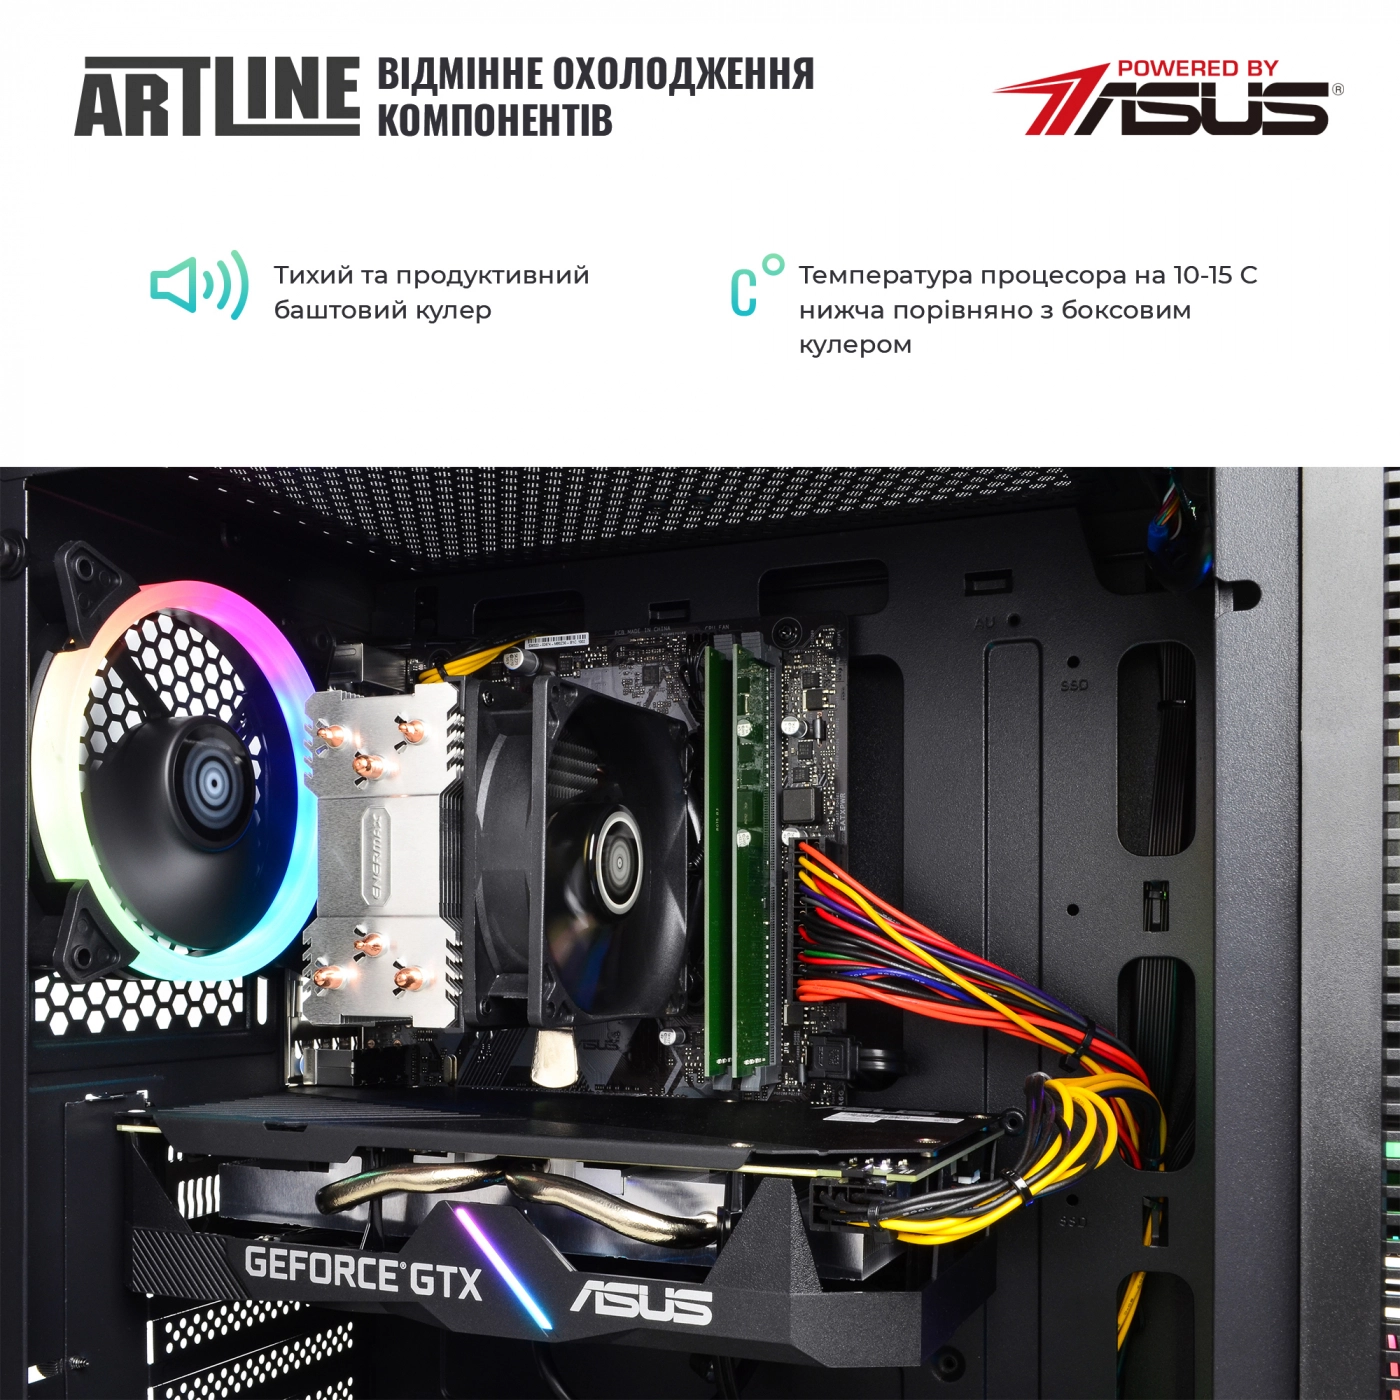 Купить Компьютер ARTLINE Gaming X55v25 - фото 3